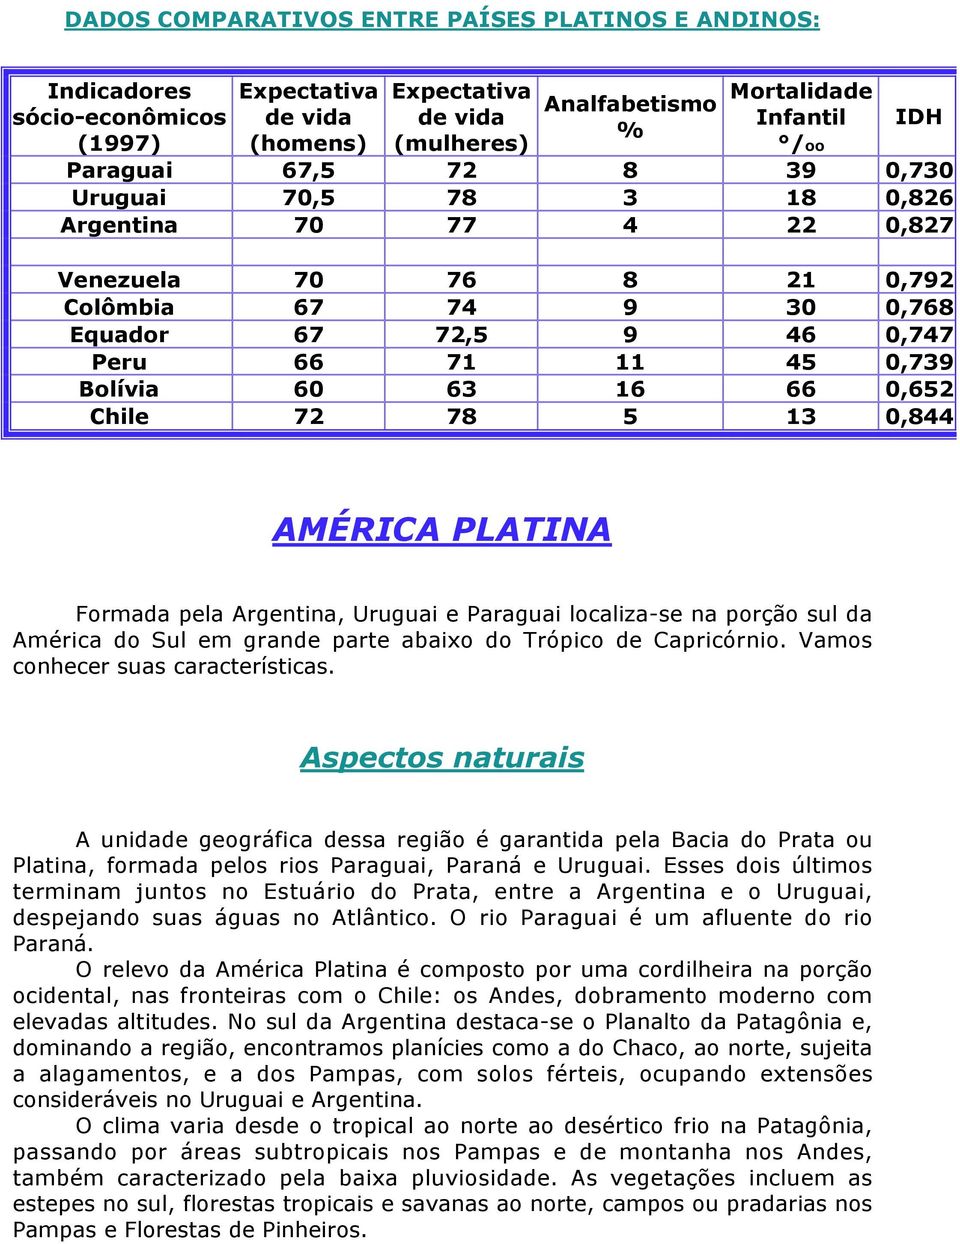 16 66 0,652 Chile 72 78 5 13 0,844 AMÉRICA PLATINA Formada pela Argentina, Uruguai e Paraguai localiza-se na porção sul da América do Sul em grande parte abaixo do Trópico de Capricórnio.